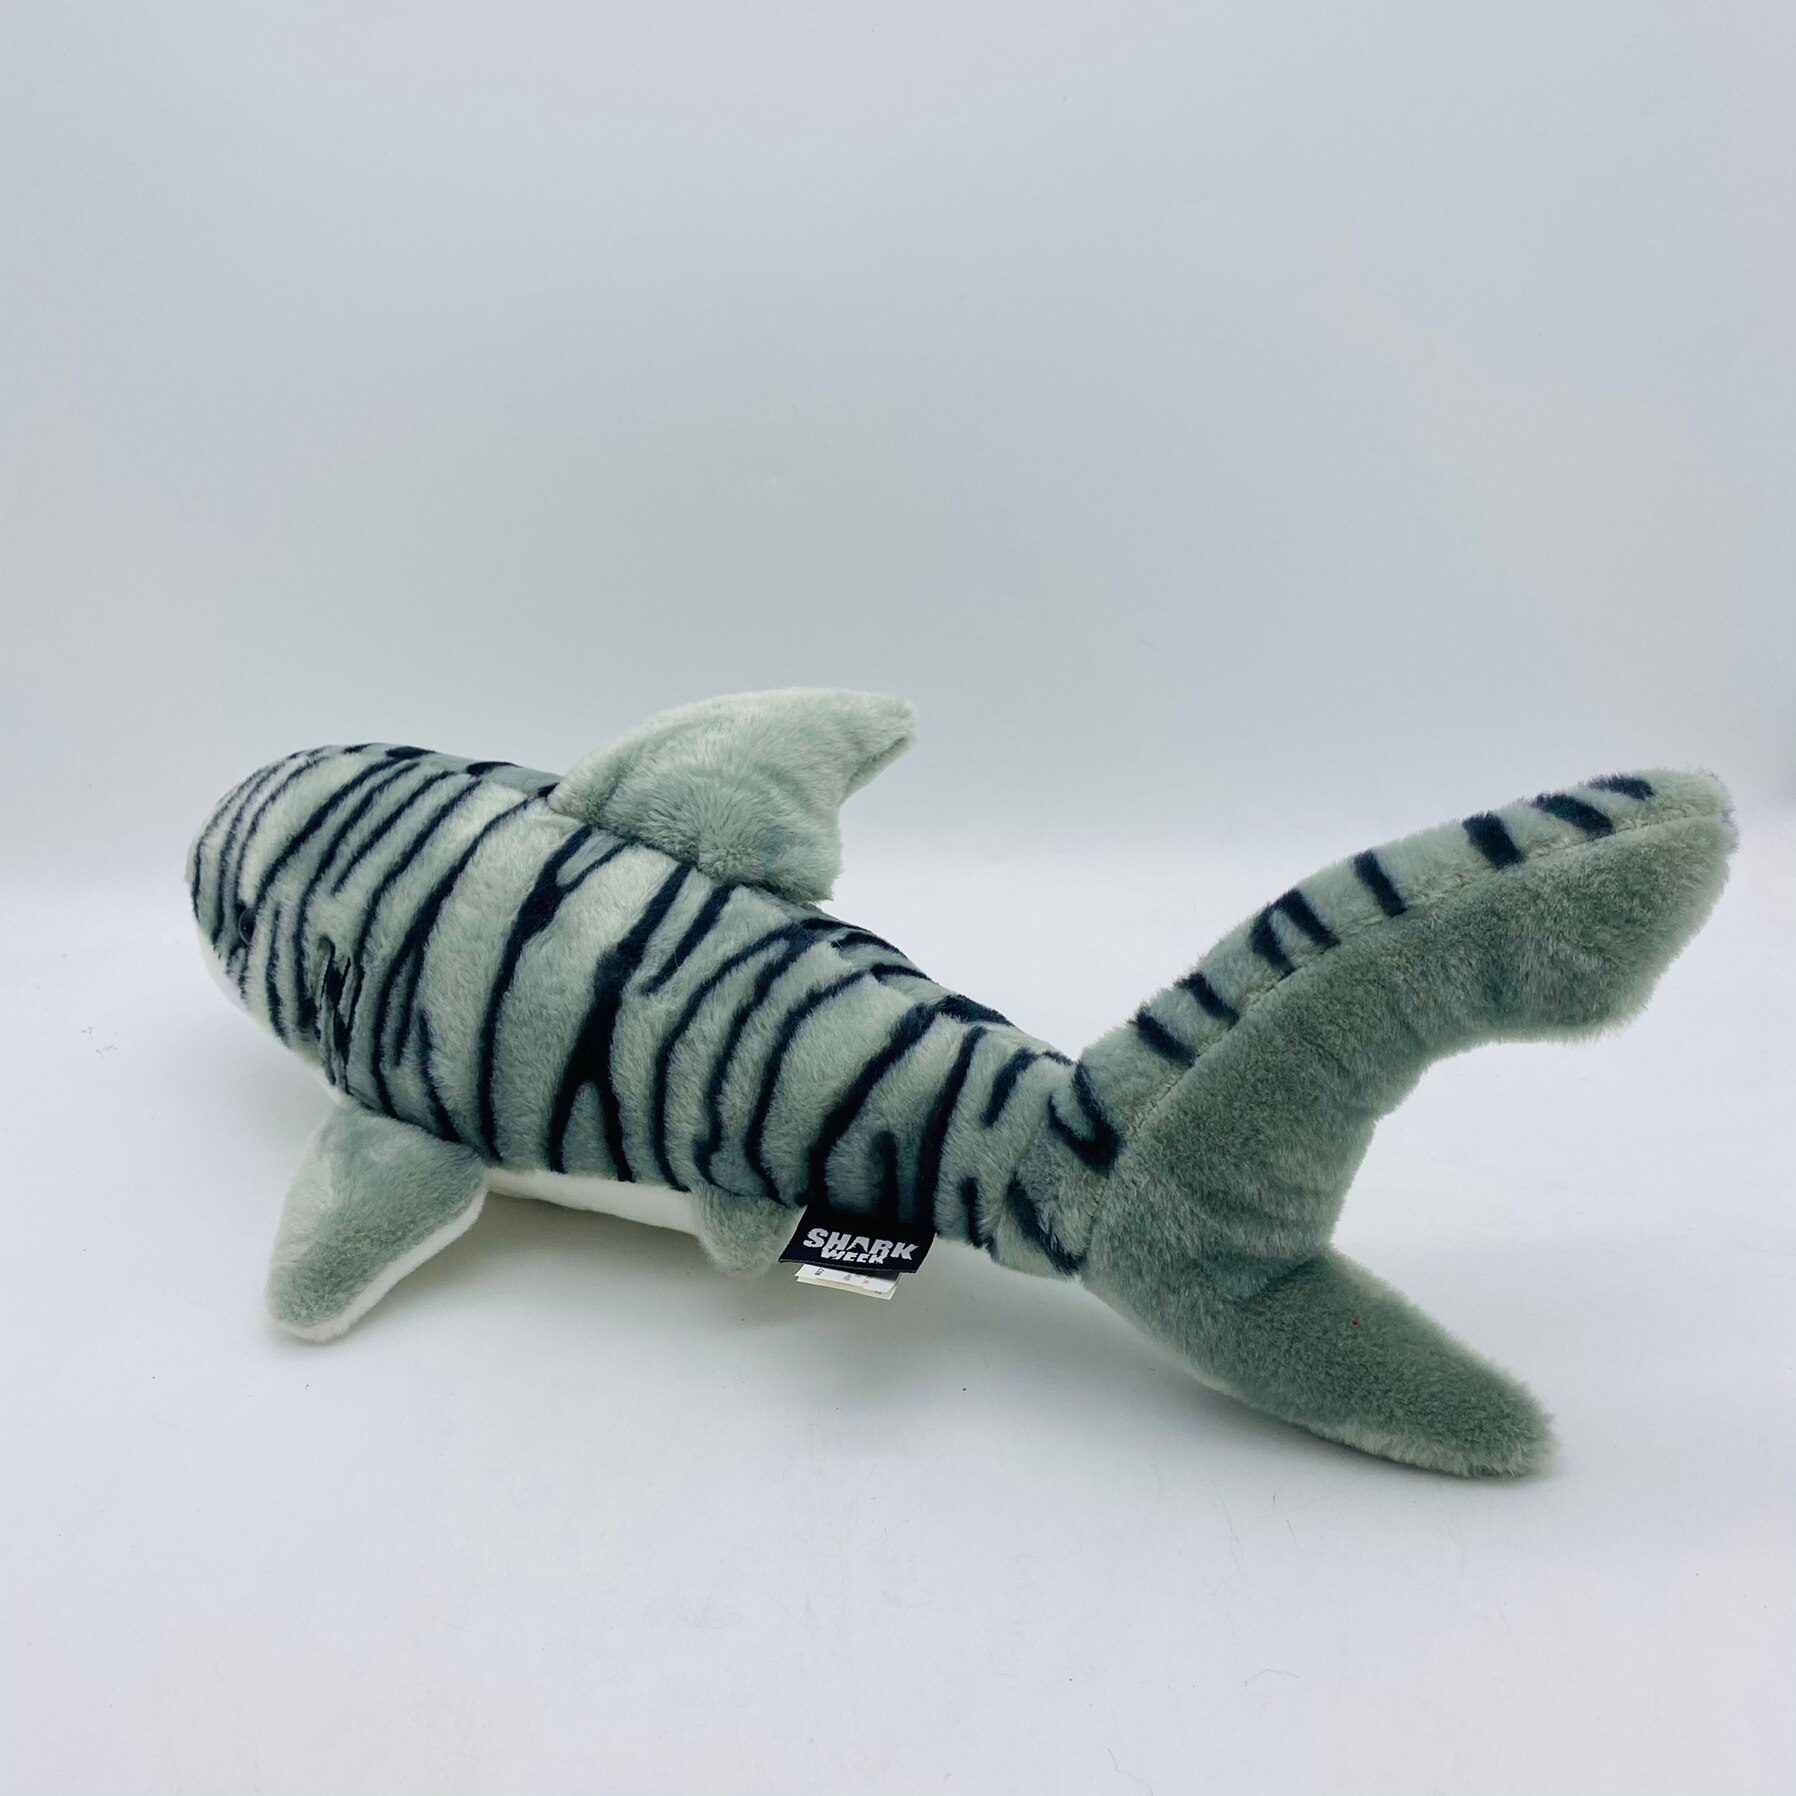 Peluche de tiburón tigre de Wild Republic | Peluche de tiburón tigre de 40 cm -2